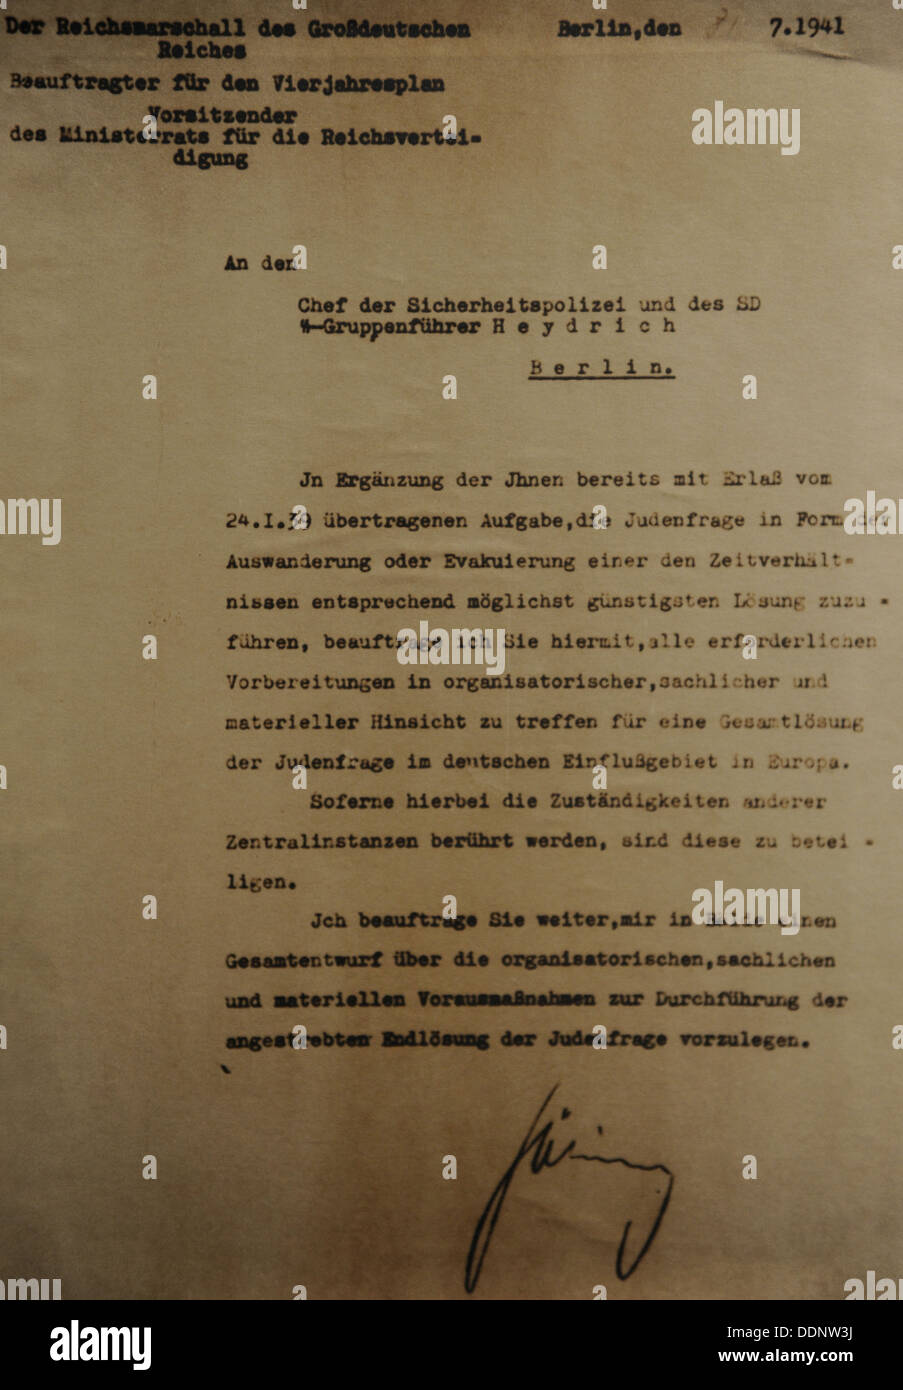 Nazi-Dokument. Bestellung von Hermann Göring auf Maßnahmen für die endgültige Lösung der Judenfrage. Berlin, 31. Juli 1941. Stockfoto